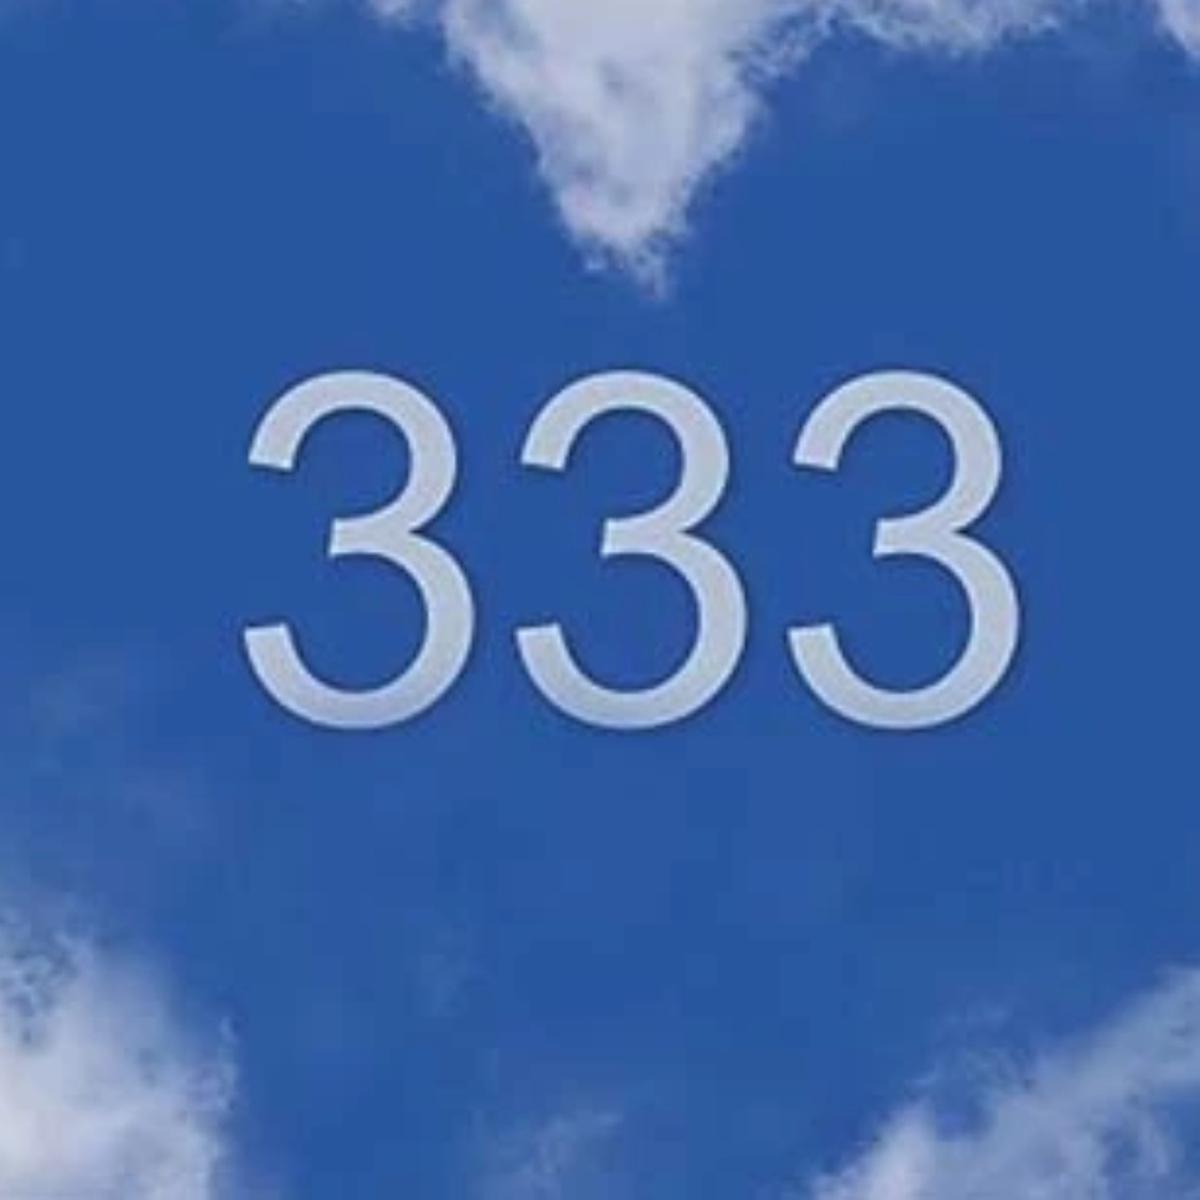 El significado espiritual del número 3333 y su poder en tu vida